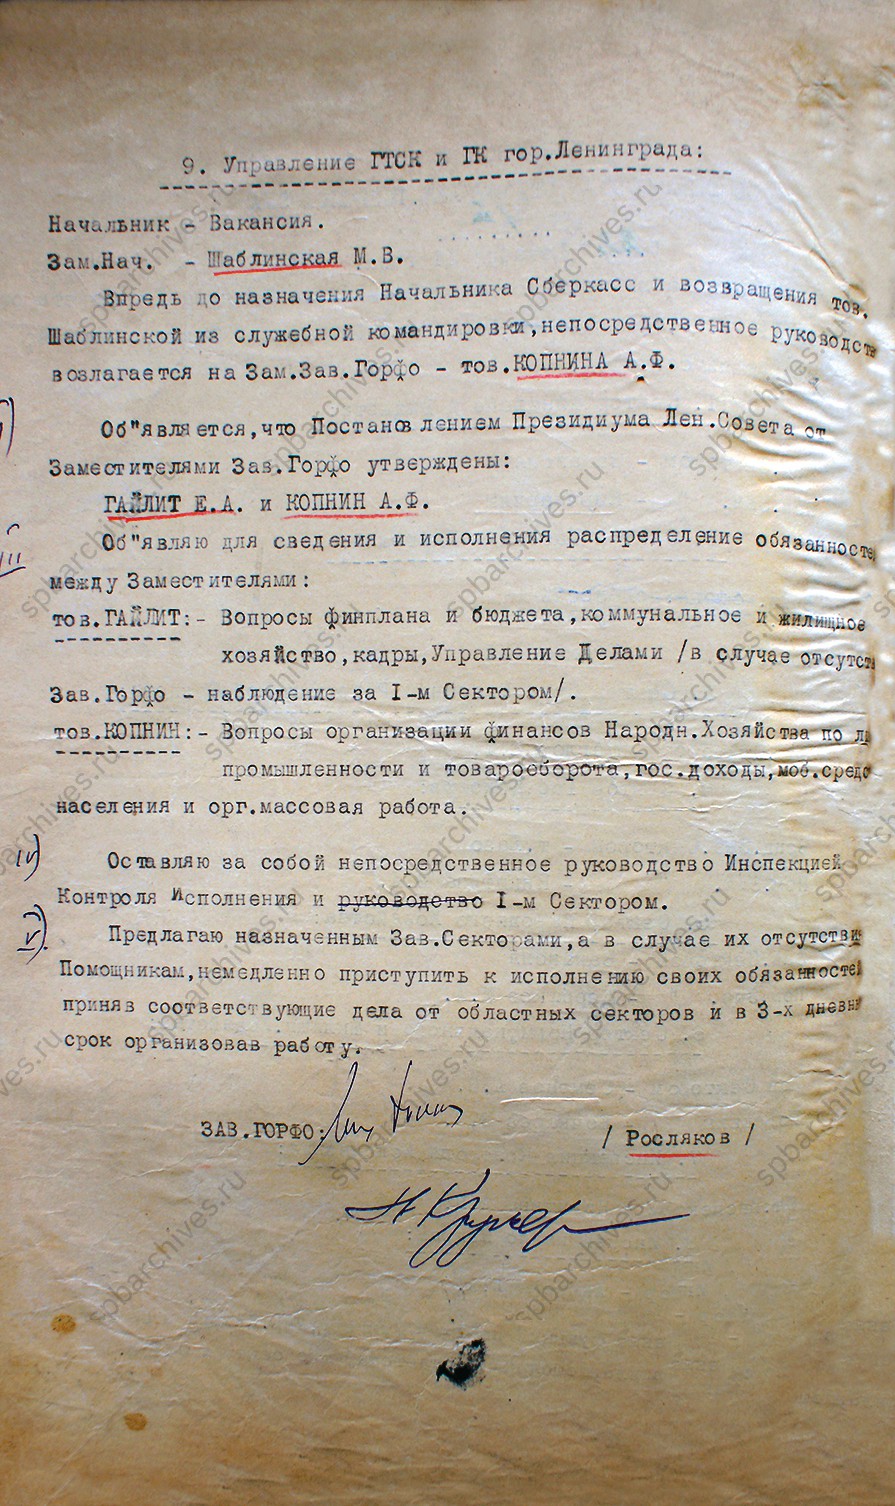 Приказ по личному составу Ленгорфинотдела от 22 декабря 1931 г.<br />
<em>Объединённый ведомственный архив Комитета финансов Санкт‑Петербурга.<br />
Ф.1. Оп.1. Д.1. Л.1, 1об.</em>